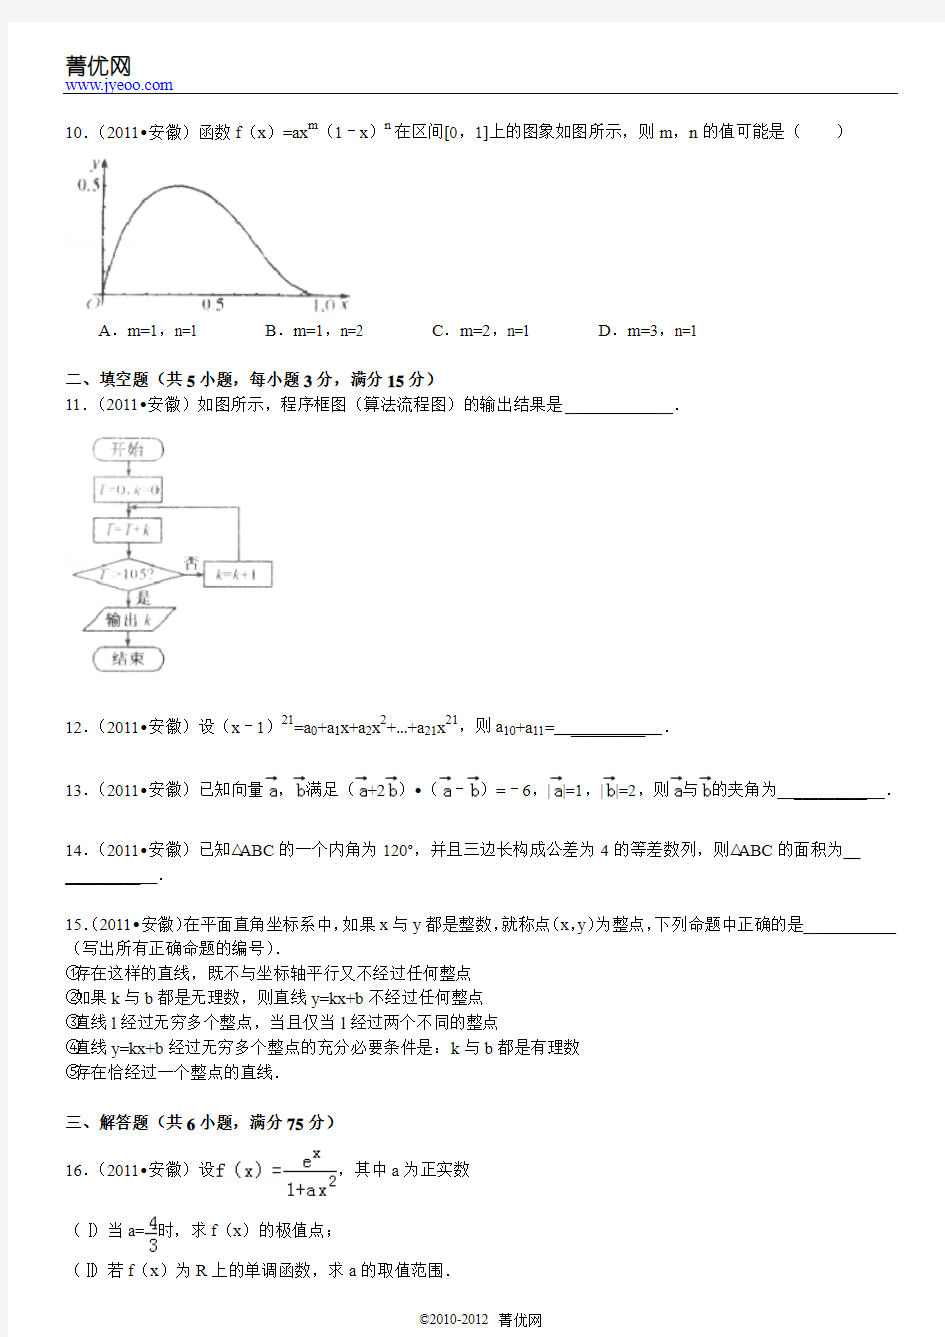 2011年安徽省高考数学试卷(理科)